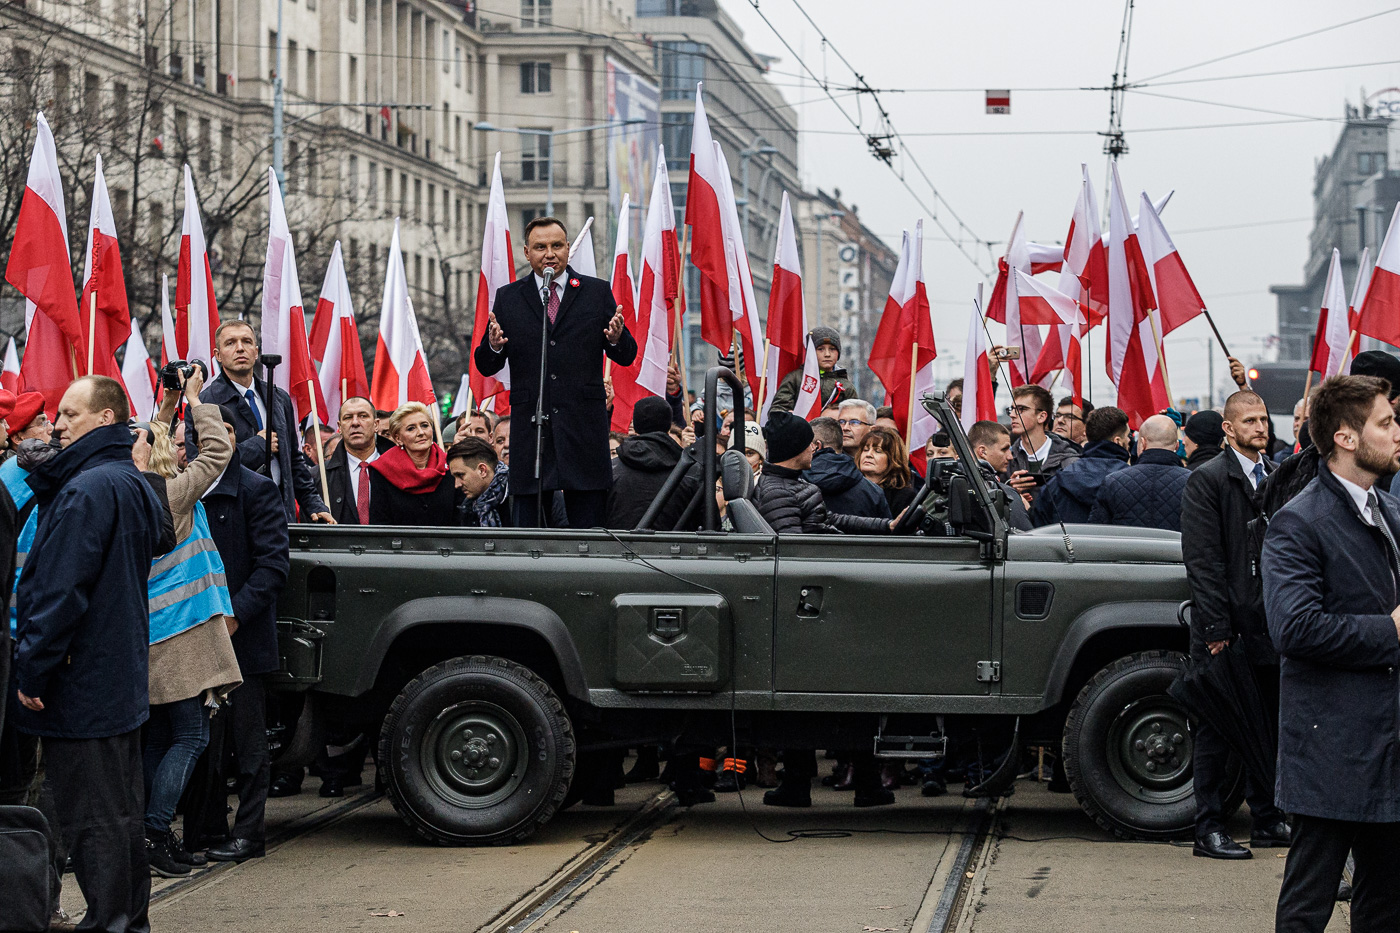 El president polonès Andrzej Duda fent el discurs d’obertura de la Marxa de la Independència de Polònia